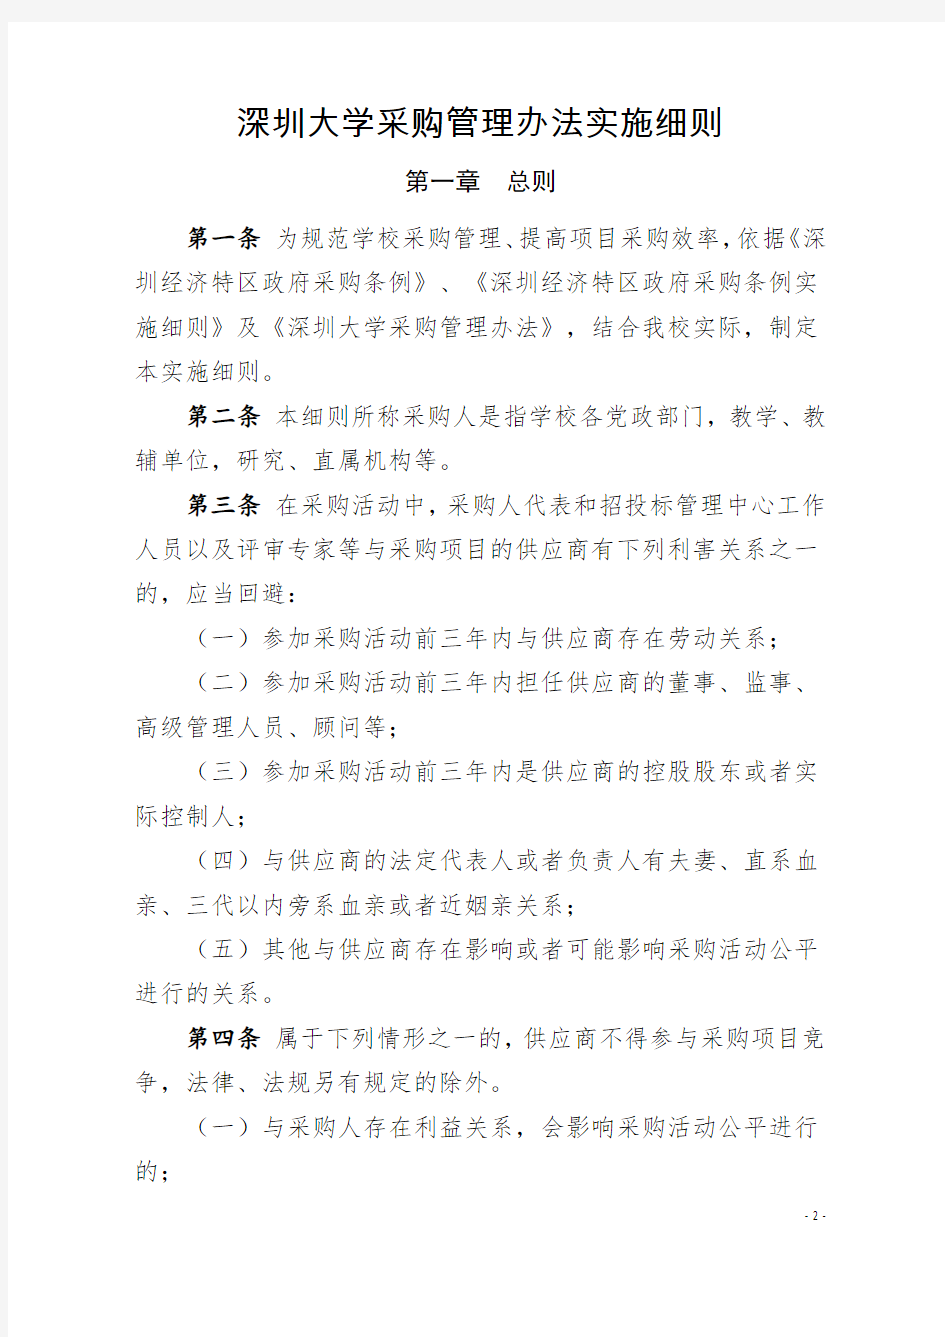 深大[2016]67号：关于印发《深圳大学采购管理办法实施细则》的通知